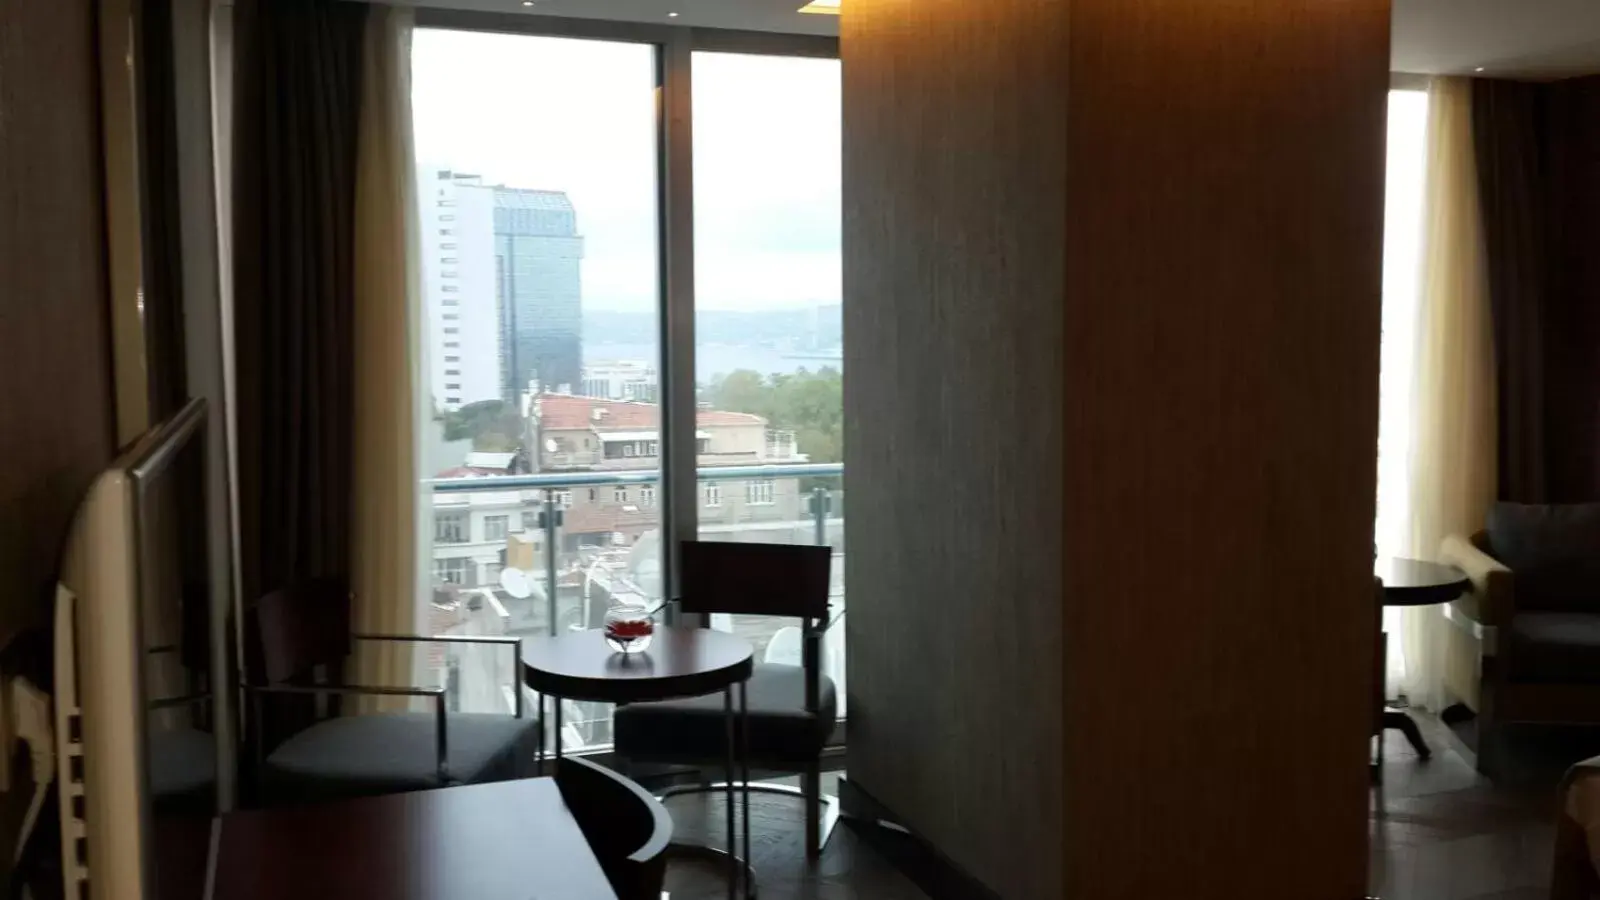 Day in Taksim Gonen Hotel